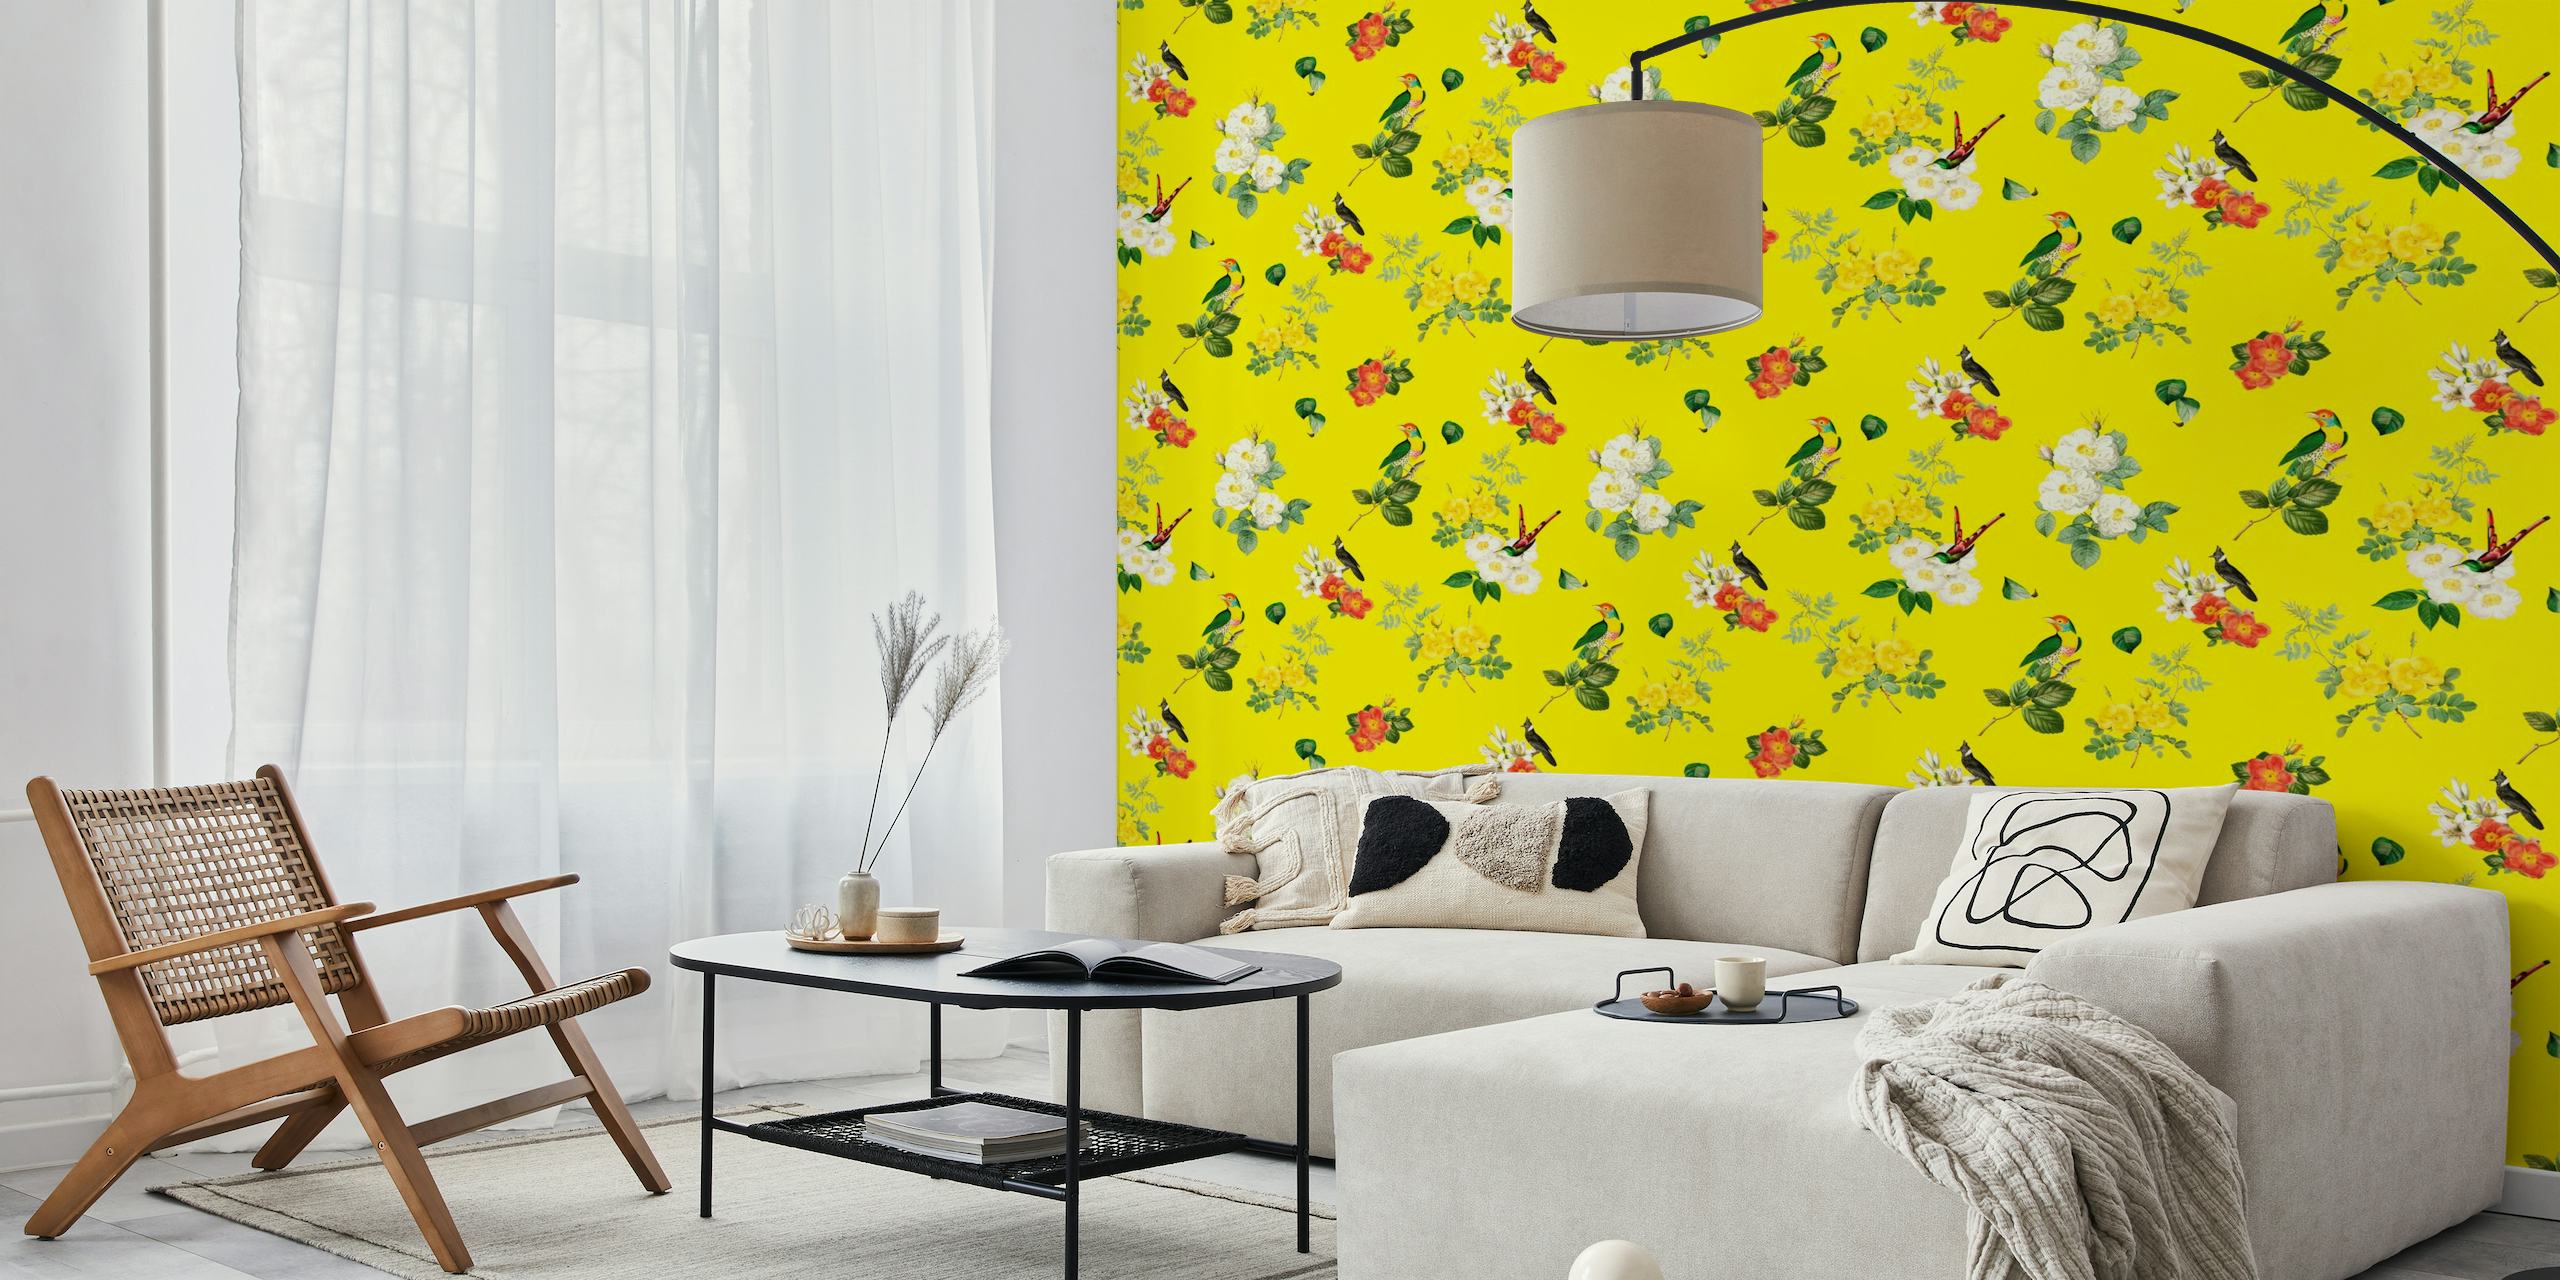 Levende vægmaleri i vintagestil med tropiske fugle og blomstermønstre på en fed gul baggrund.